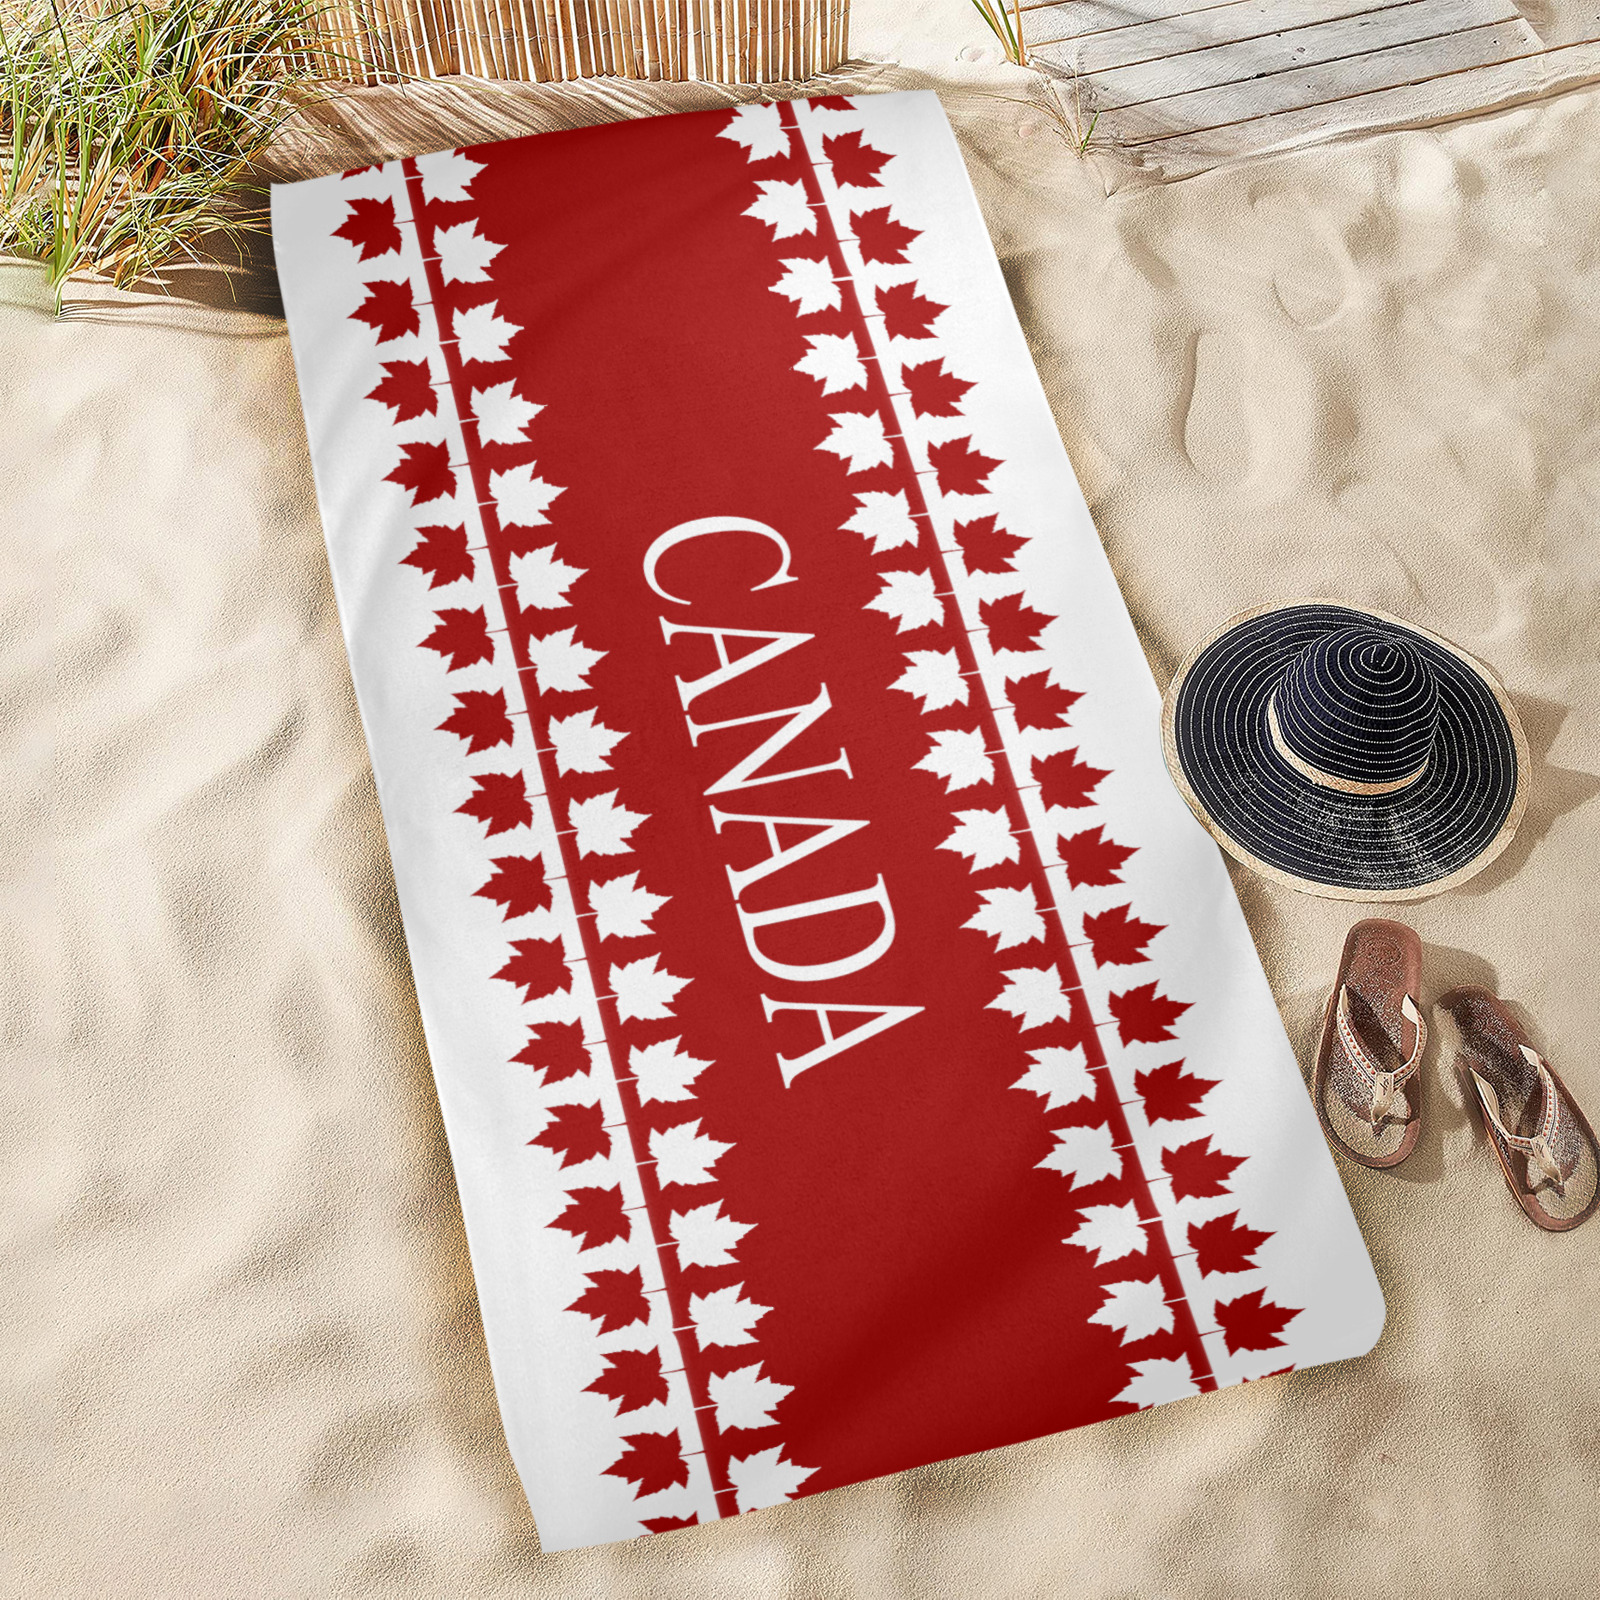 Canada Souvenir Towels Beach Towel 31"x71"(NEW)